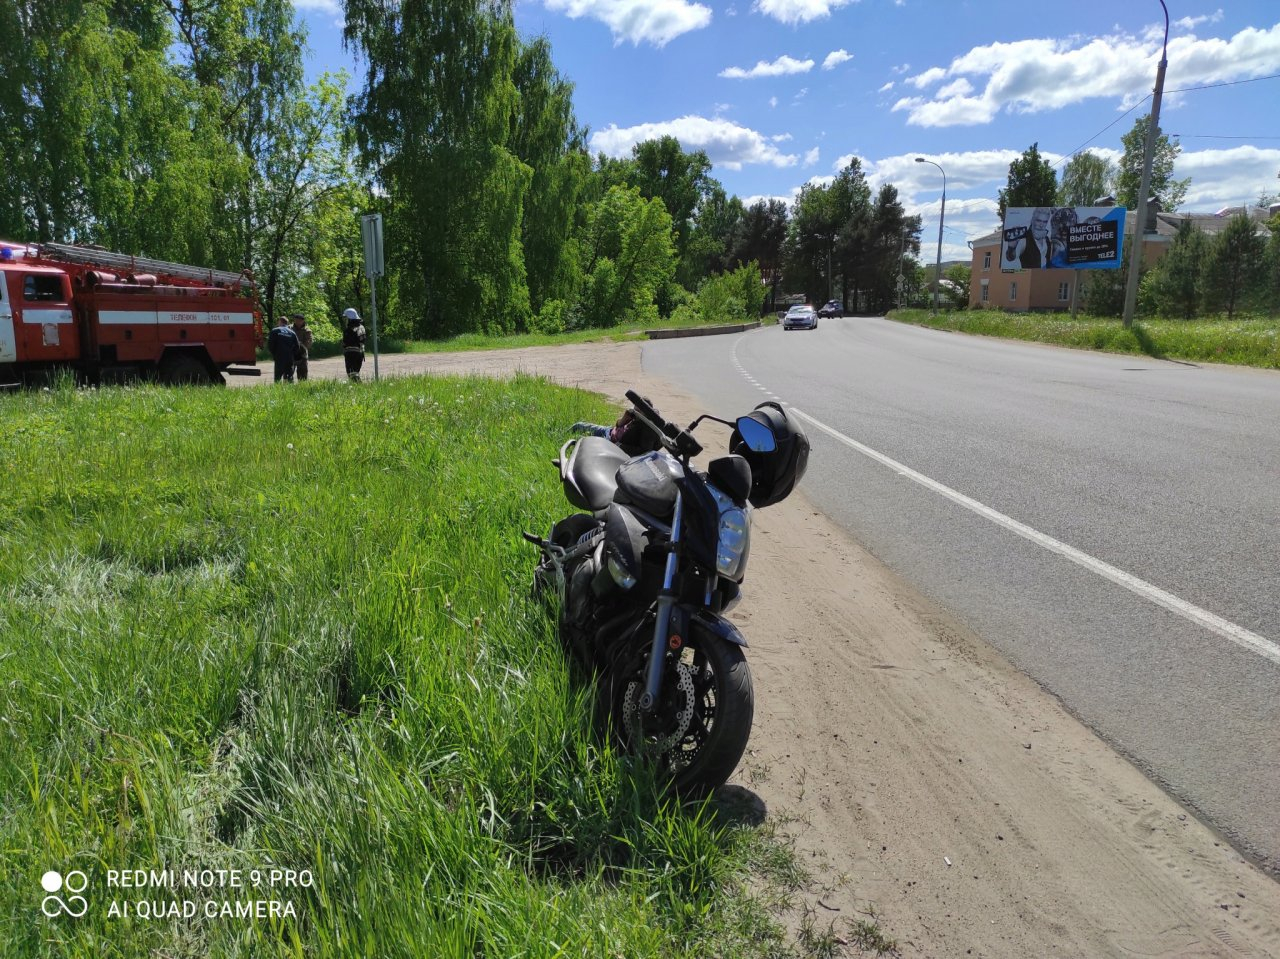 «Отлетел от байка»: в Ярославской области пьяный мотоциклист устроил ДТП